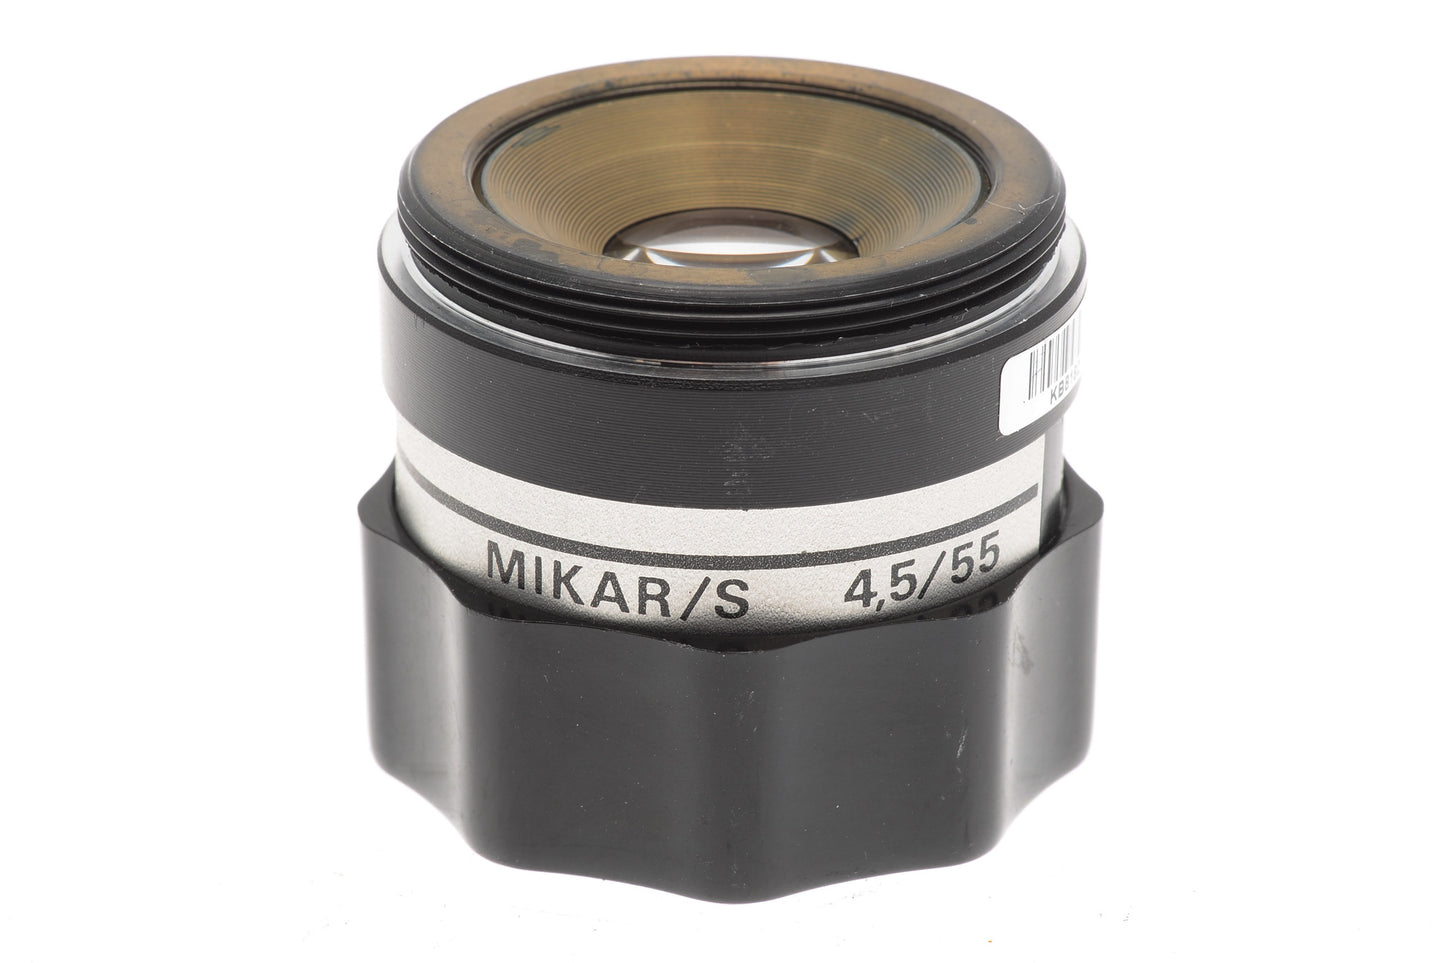 PZO 55mm f4.5 Mikar/S - Lens